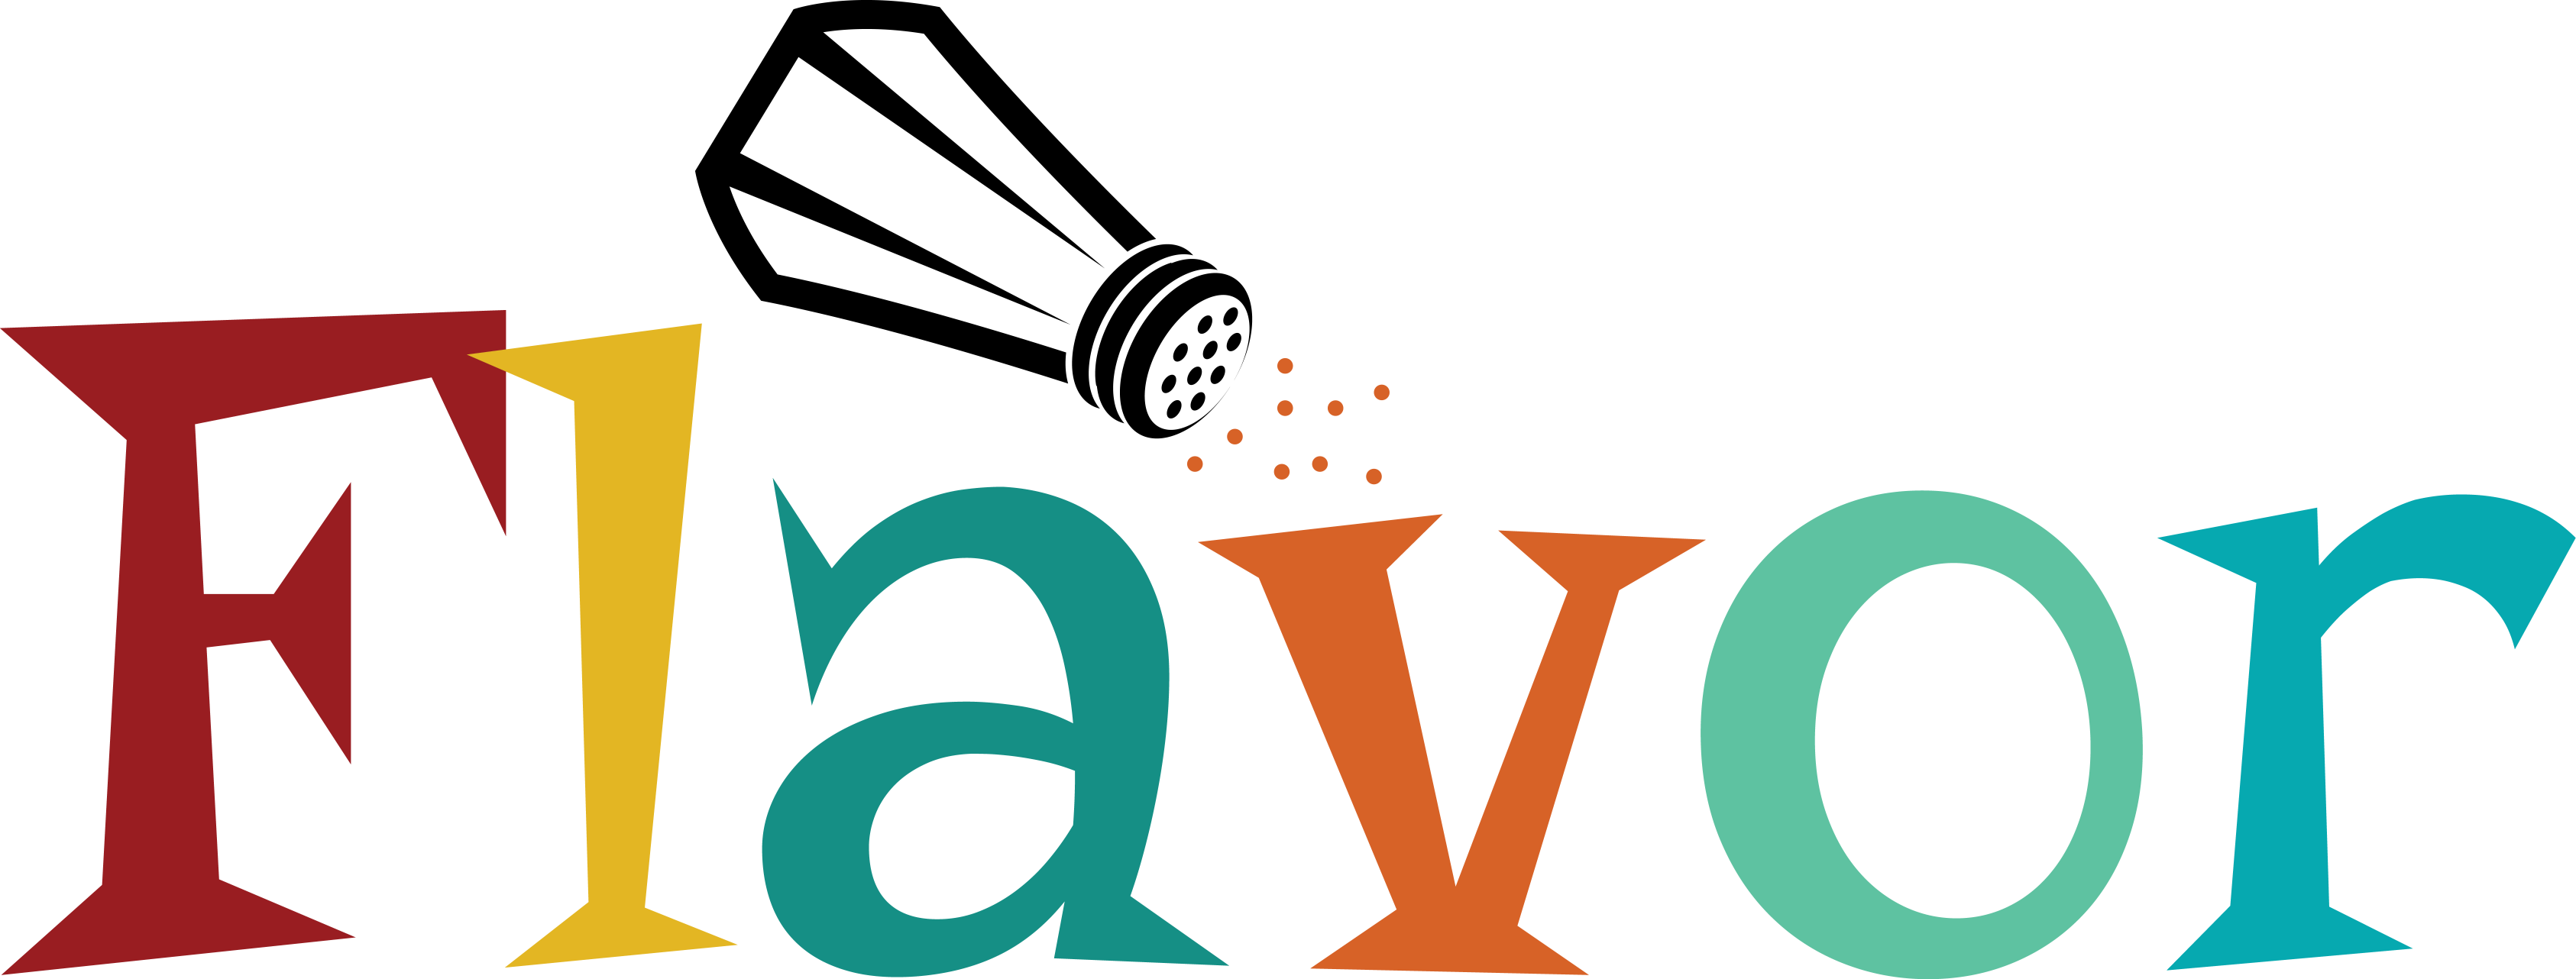 Environment - Flavor Logo (3372x1282)